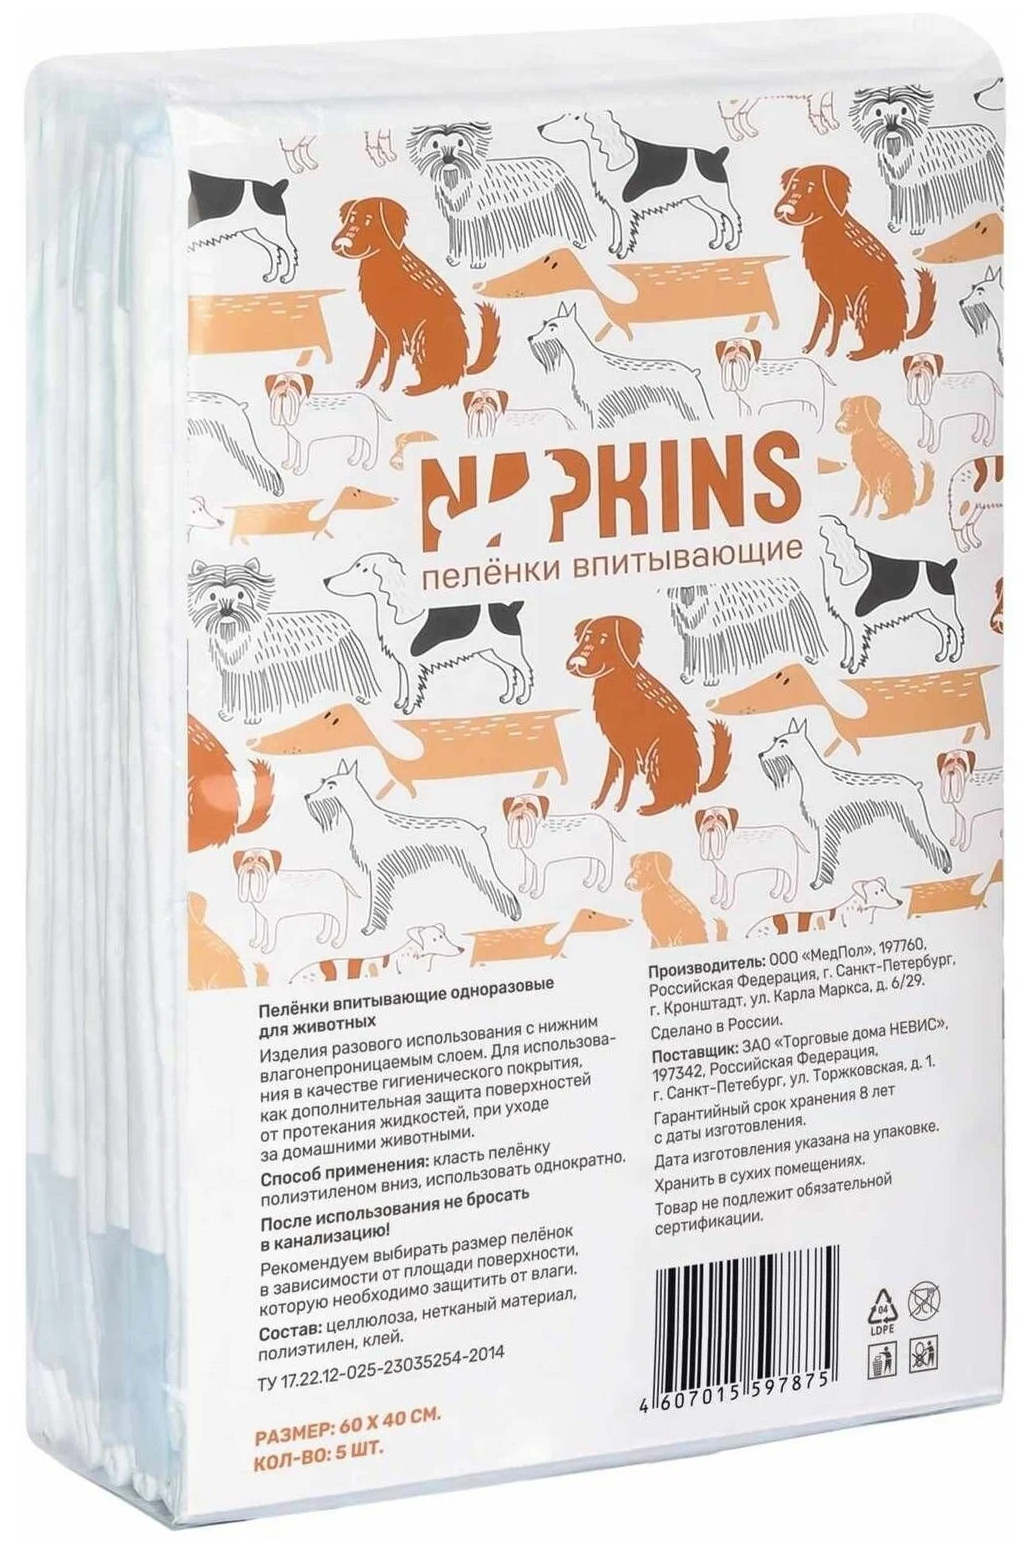 Набор впитывающих пеленок для собак "Napkins", 60x40 см 5 штук